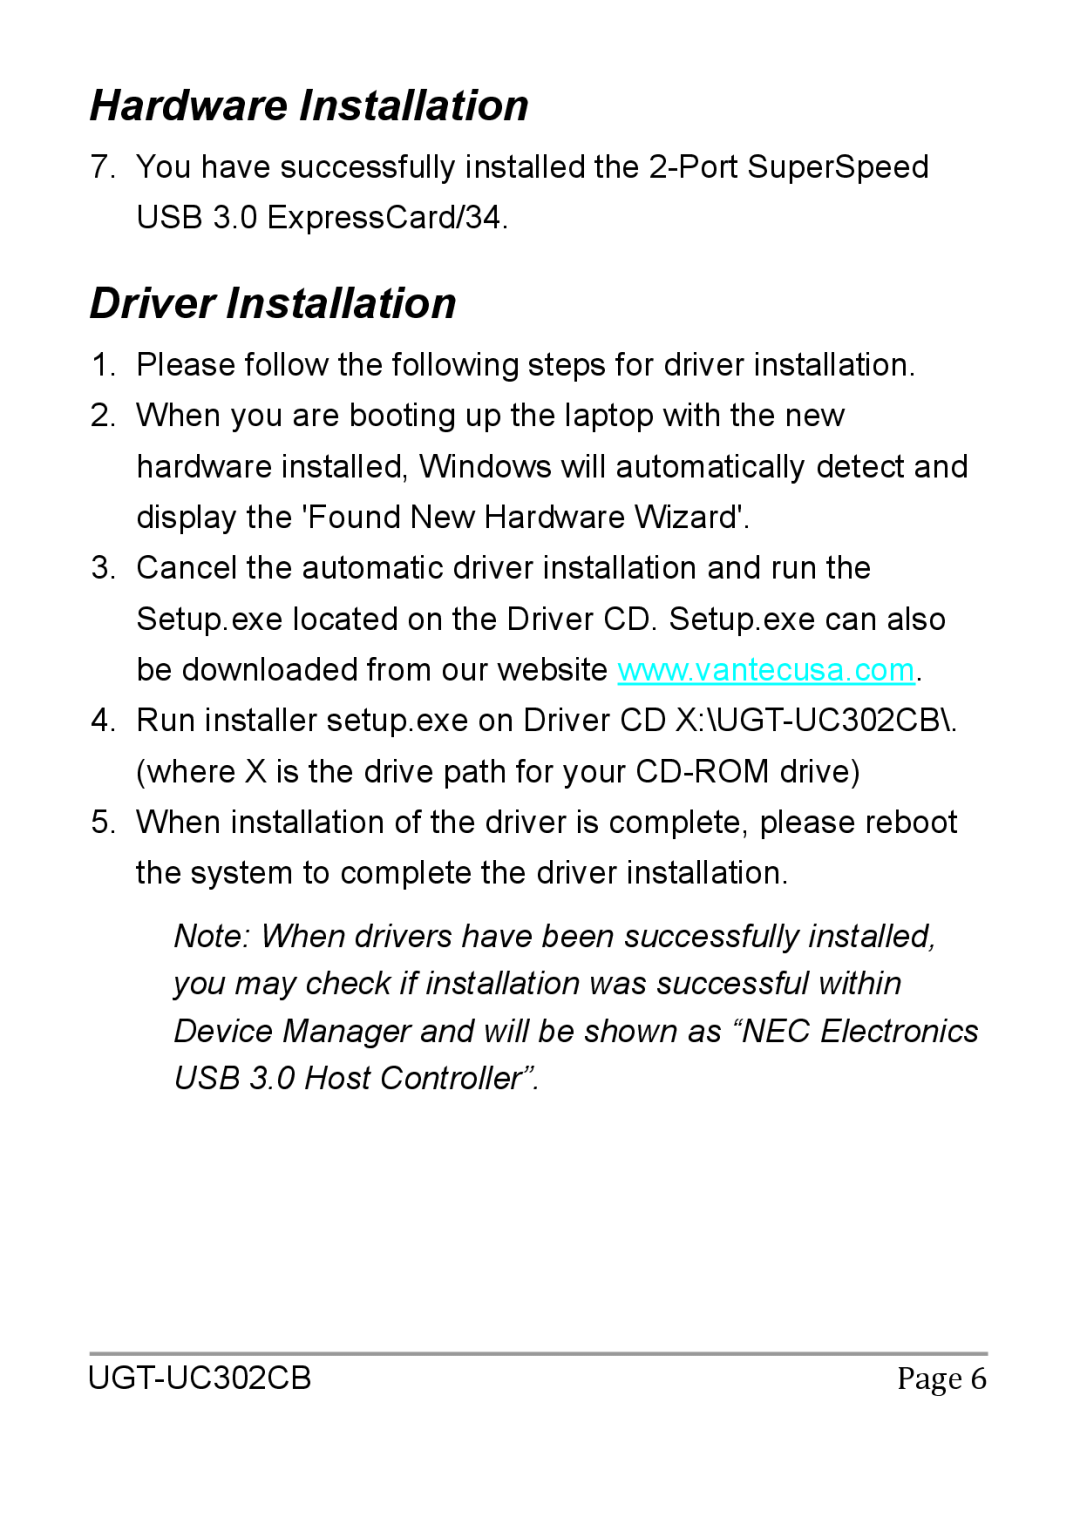 Vantec UGT-UC302CB user manual Driver Installation, Hardware Installation 